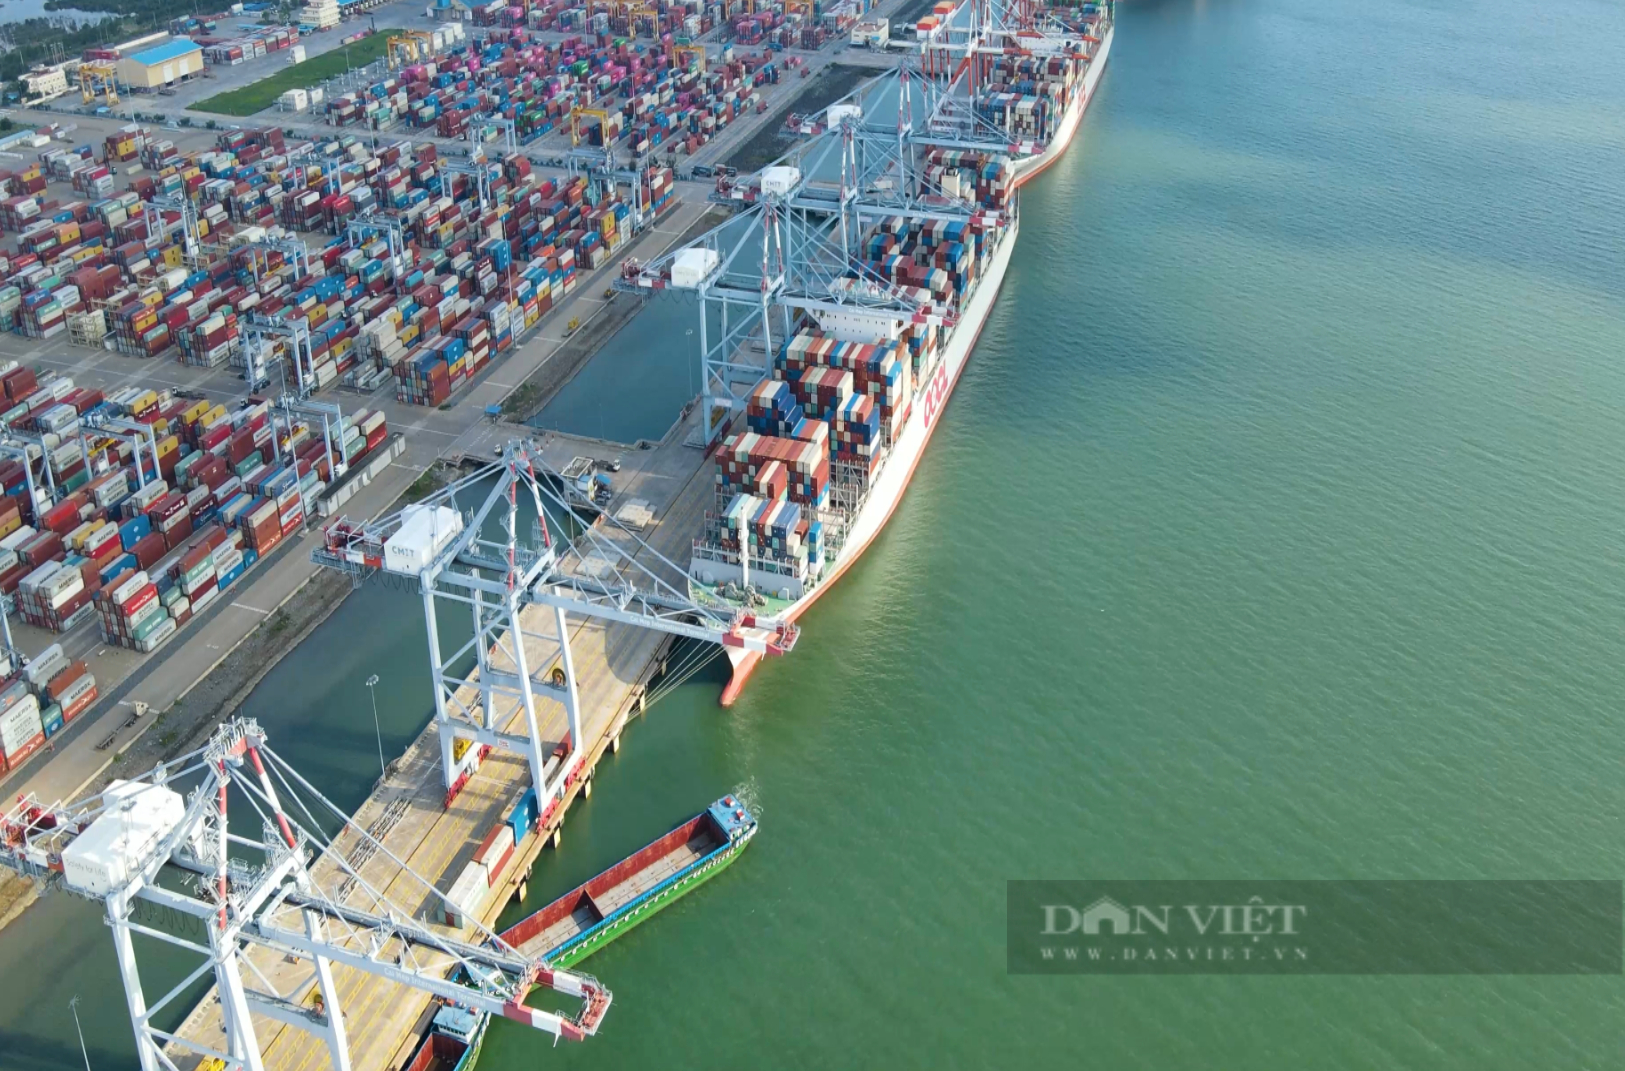 Bà Rịa - Vũng Tàu: Tận dụng tài nguyên biển, “siêu cảng” để sớm thành trung tâm kinh tế biển quốc gia - Ảnh 1.